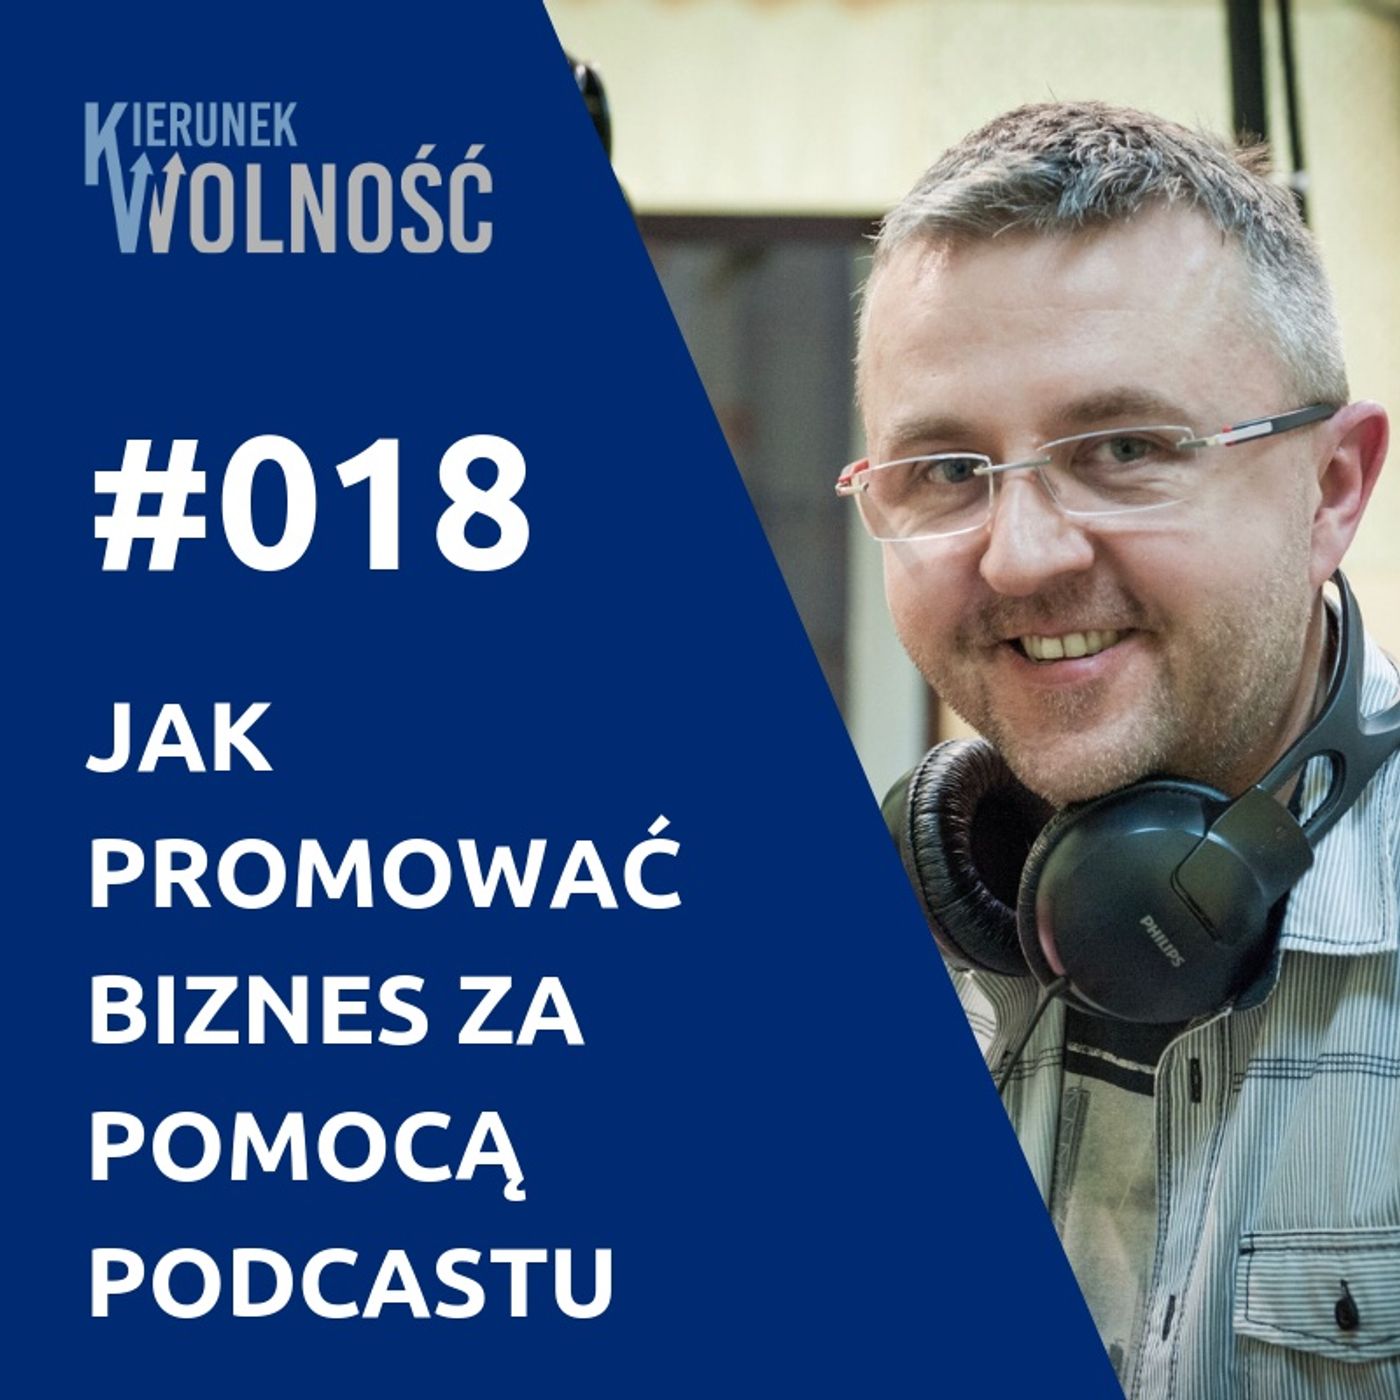 KW018: Jak promować własny biznes za pomocą podcastu - Marek Jankowski (część 2 z 2)